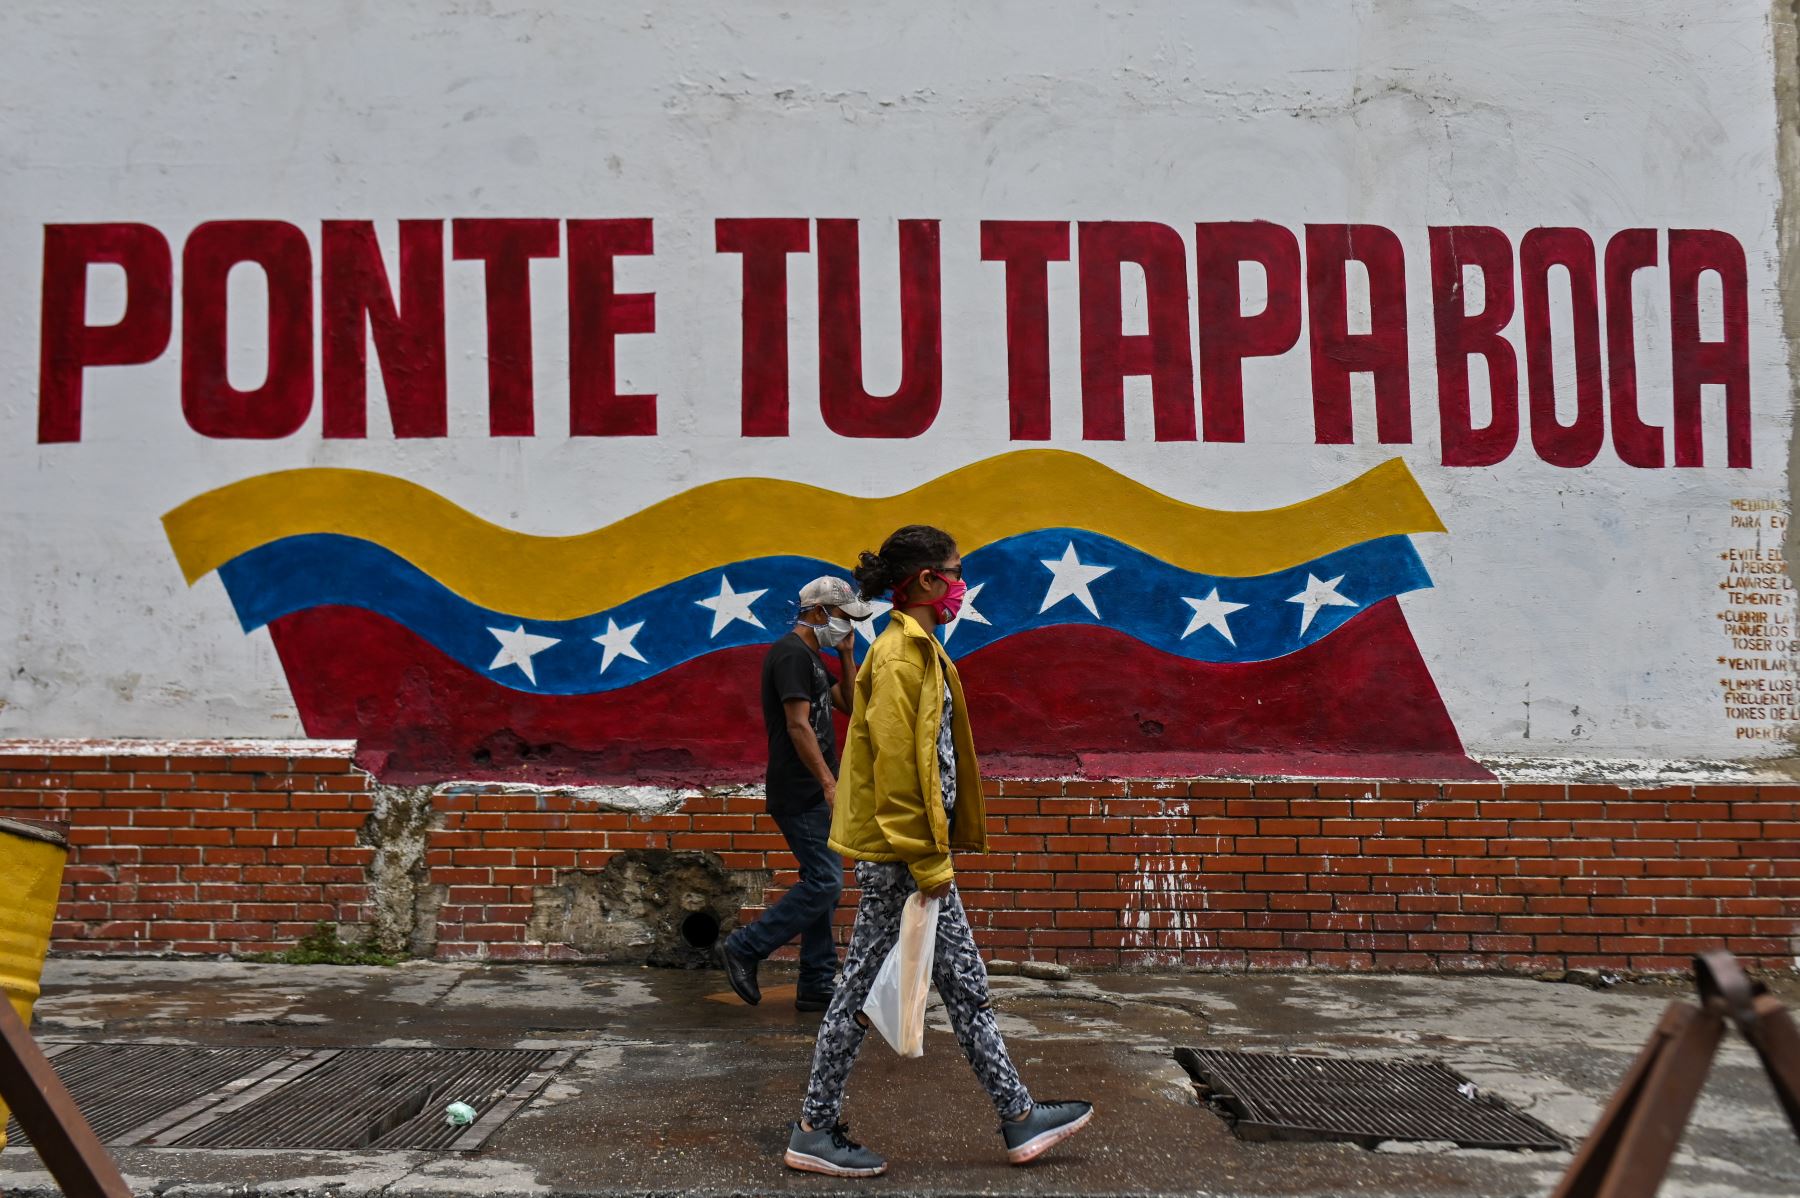 Personas con mascarillas pasan frente a una pared que dice “Ponte la mascarilla” en el centro de Caracas. Foto: AFP